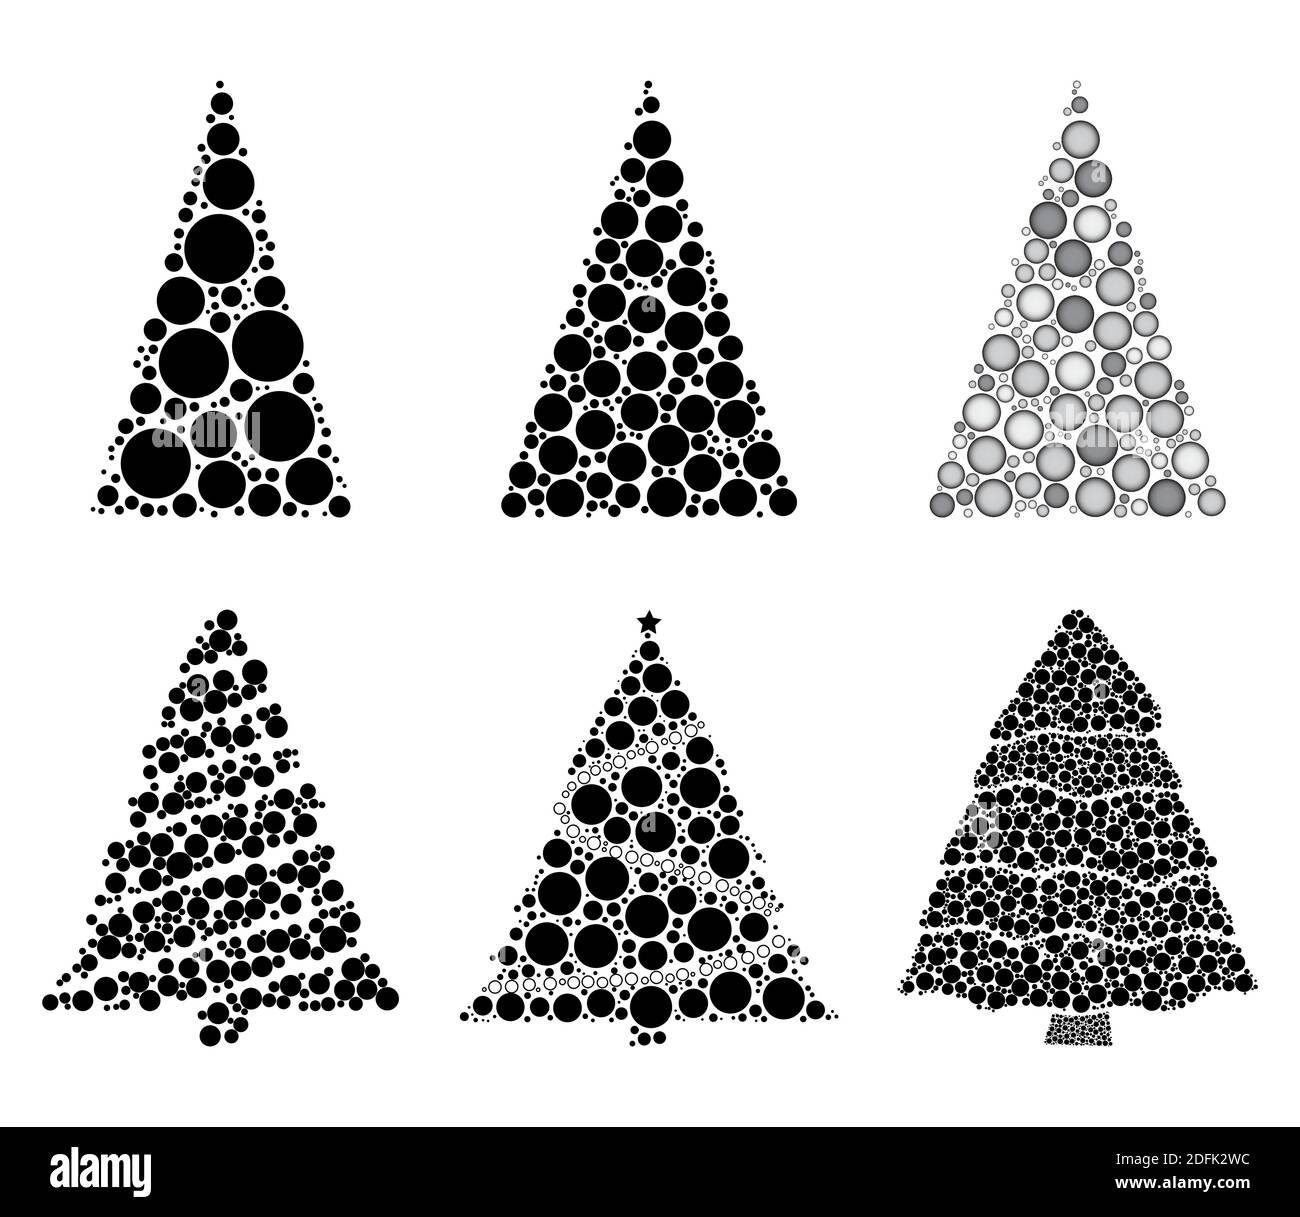 Abstrakte weihnachtsbaum Silhouetten aus vielen Punkten Sammlung gemacht. Set aus Tannenbaum mit schwarzen Kreisen. Gut für Retro oder Vintage Weihnachtskarte, Bann Stock Vektor